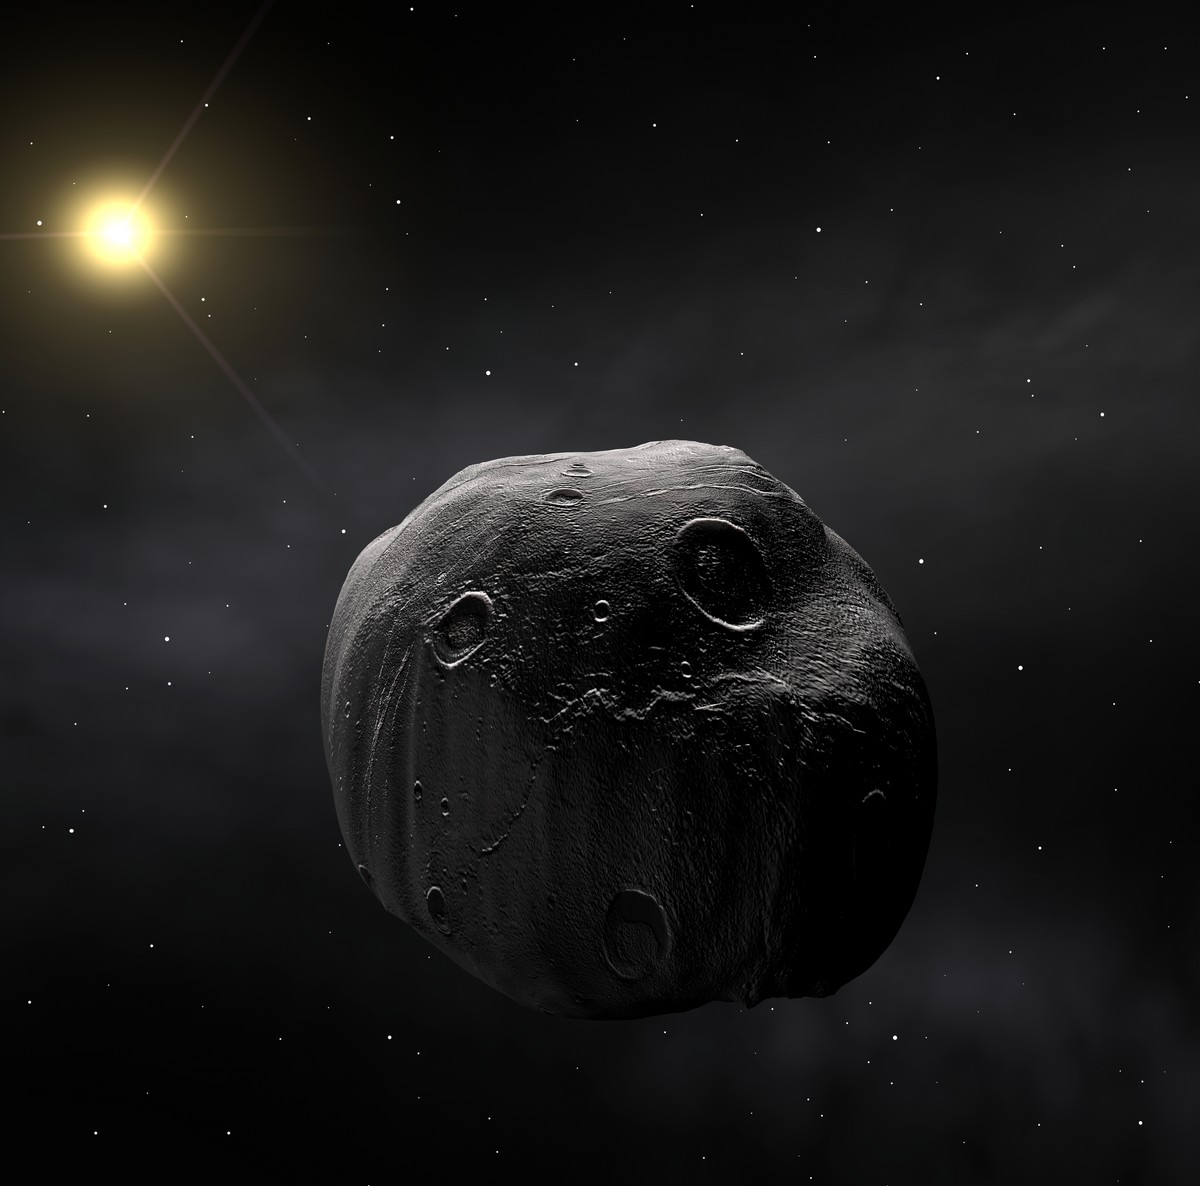 Dans la nuit du 8 au 9 juillet, l'astéroïde 472 Roma occultera pendant quelques secondes la brillante étoile Delta Ophiuchi grâce à un alignement fortuit avec la Terre. Cette vision d'artiste permet d'imaginer ce que verrait une sonde spatiale circulant dans la ceinture d'astéroïdes. Crédit Eso
